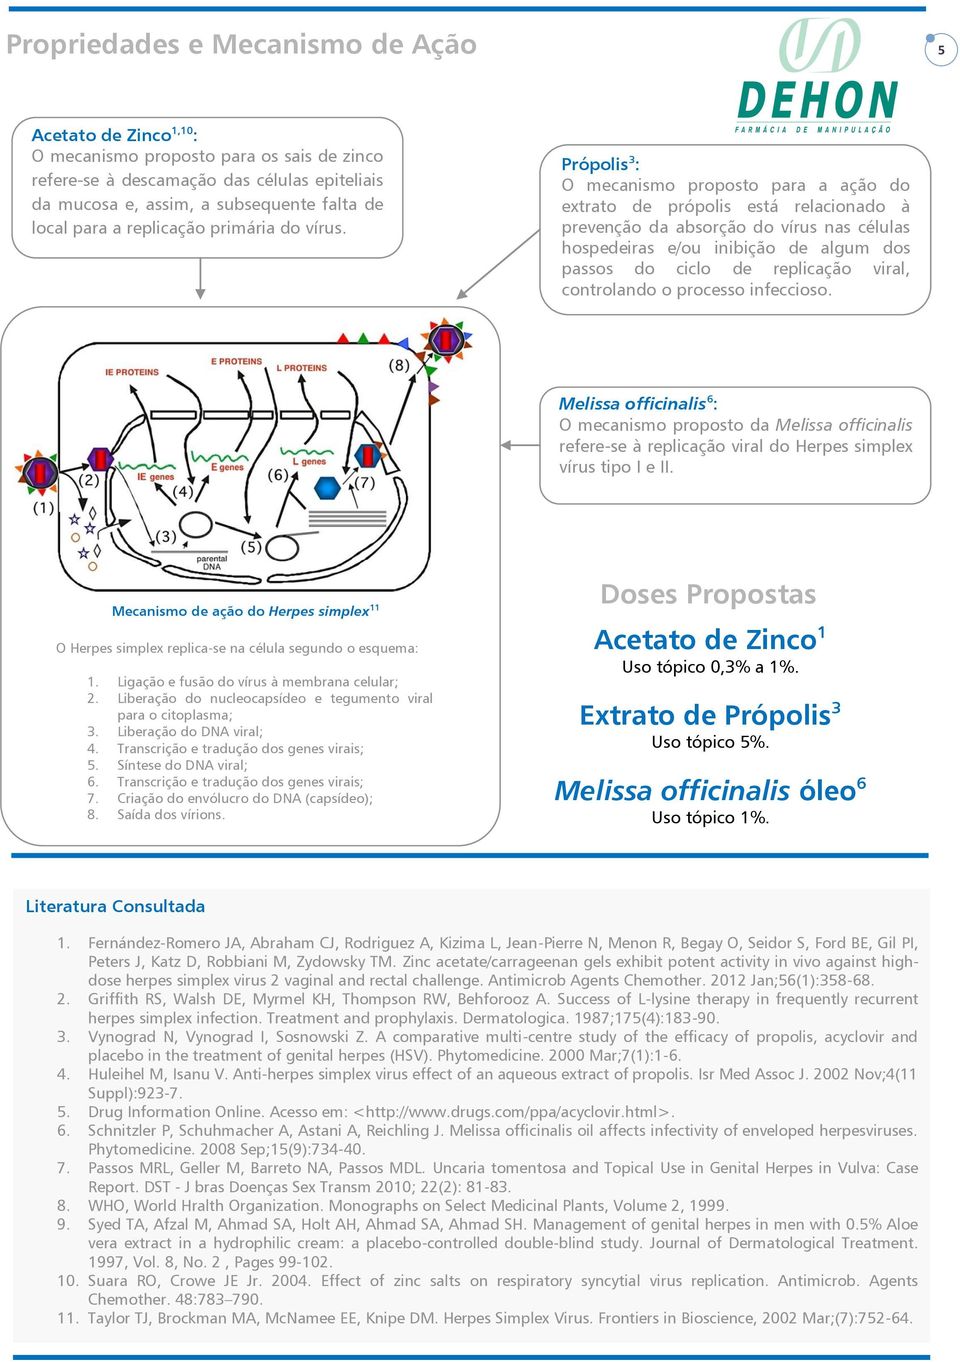 Própolis 3 : O mecanismo proposto para a ação do extrato de própolis está relacionado à prevenção da absorção do vírus nas células hospedeiras e/ou inibição de algum dos passos do ciclo de replicação